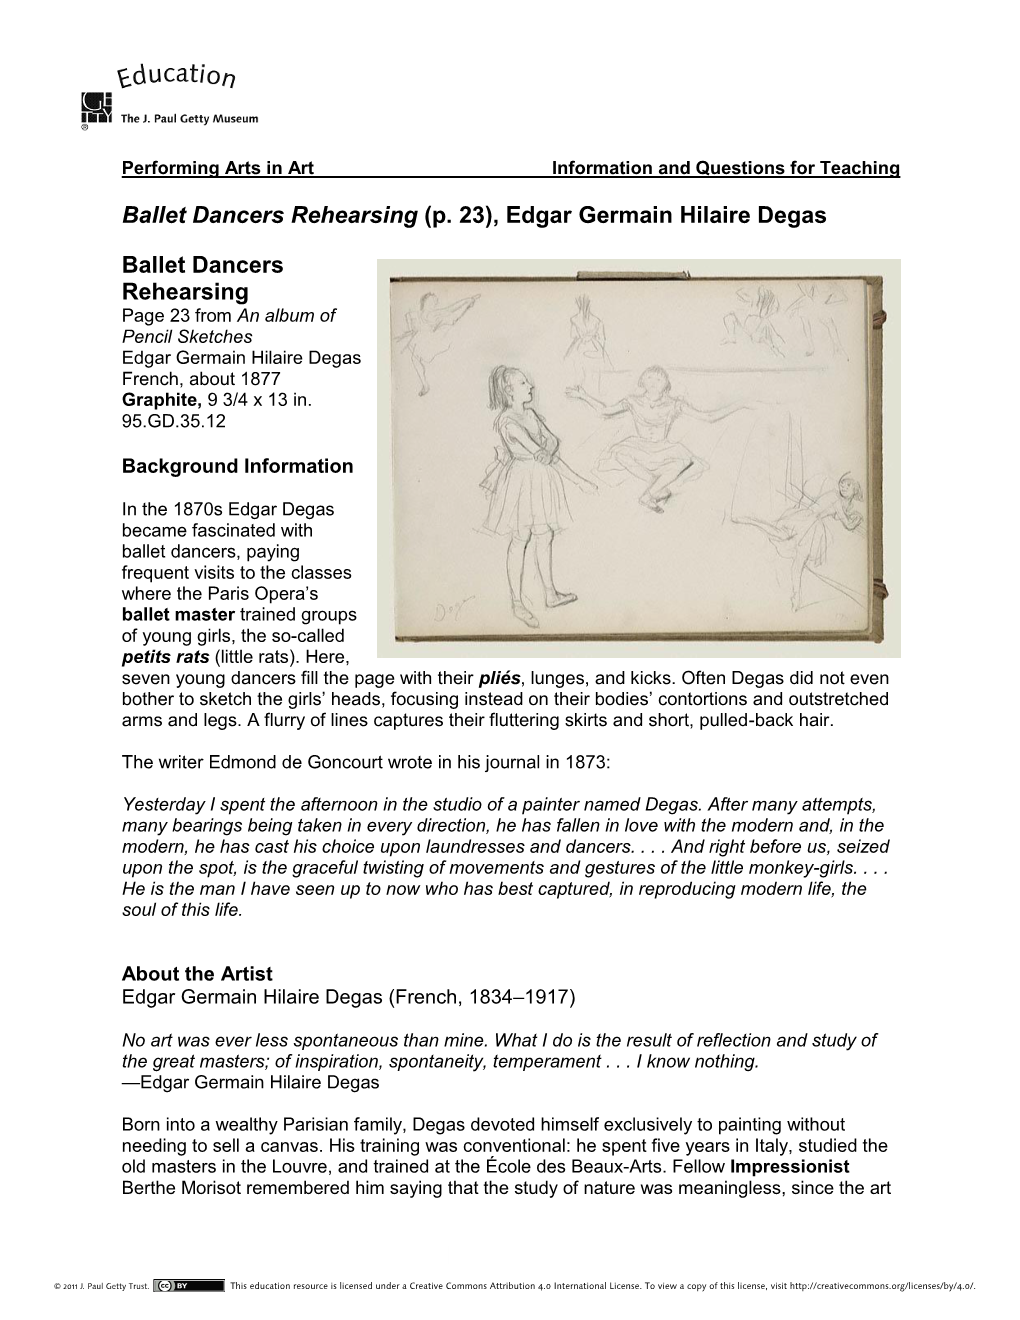 Ballet Dancers Rehearsing (P. 23), Edgar Germain Hilaire Degas Ballet Dancers Rehearsing